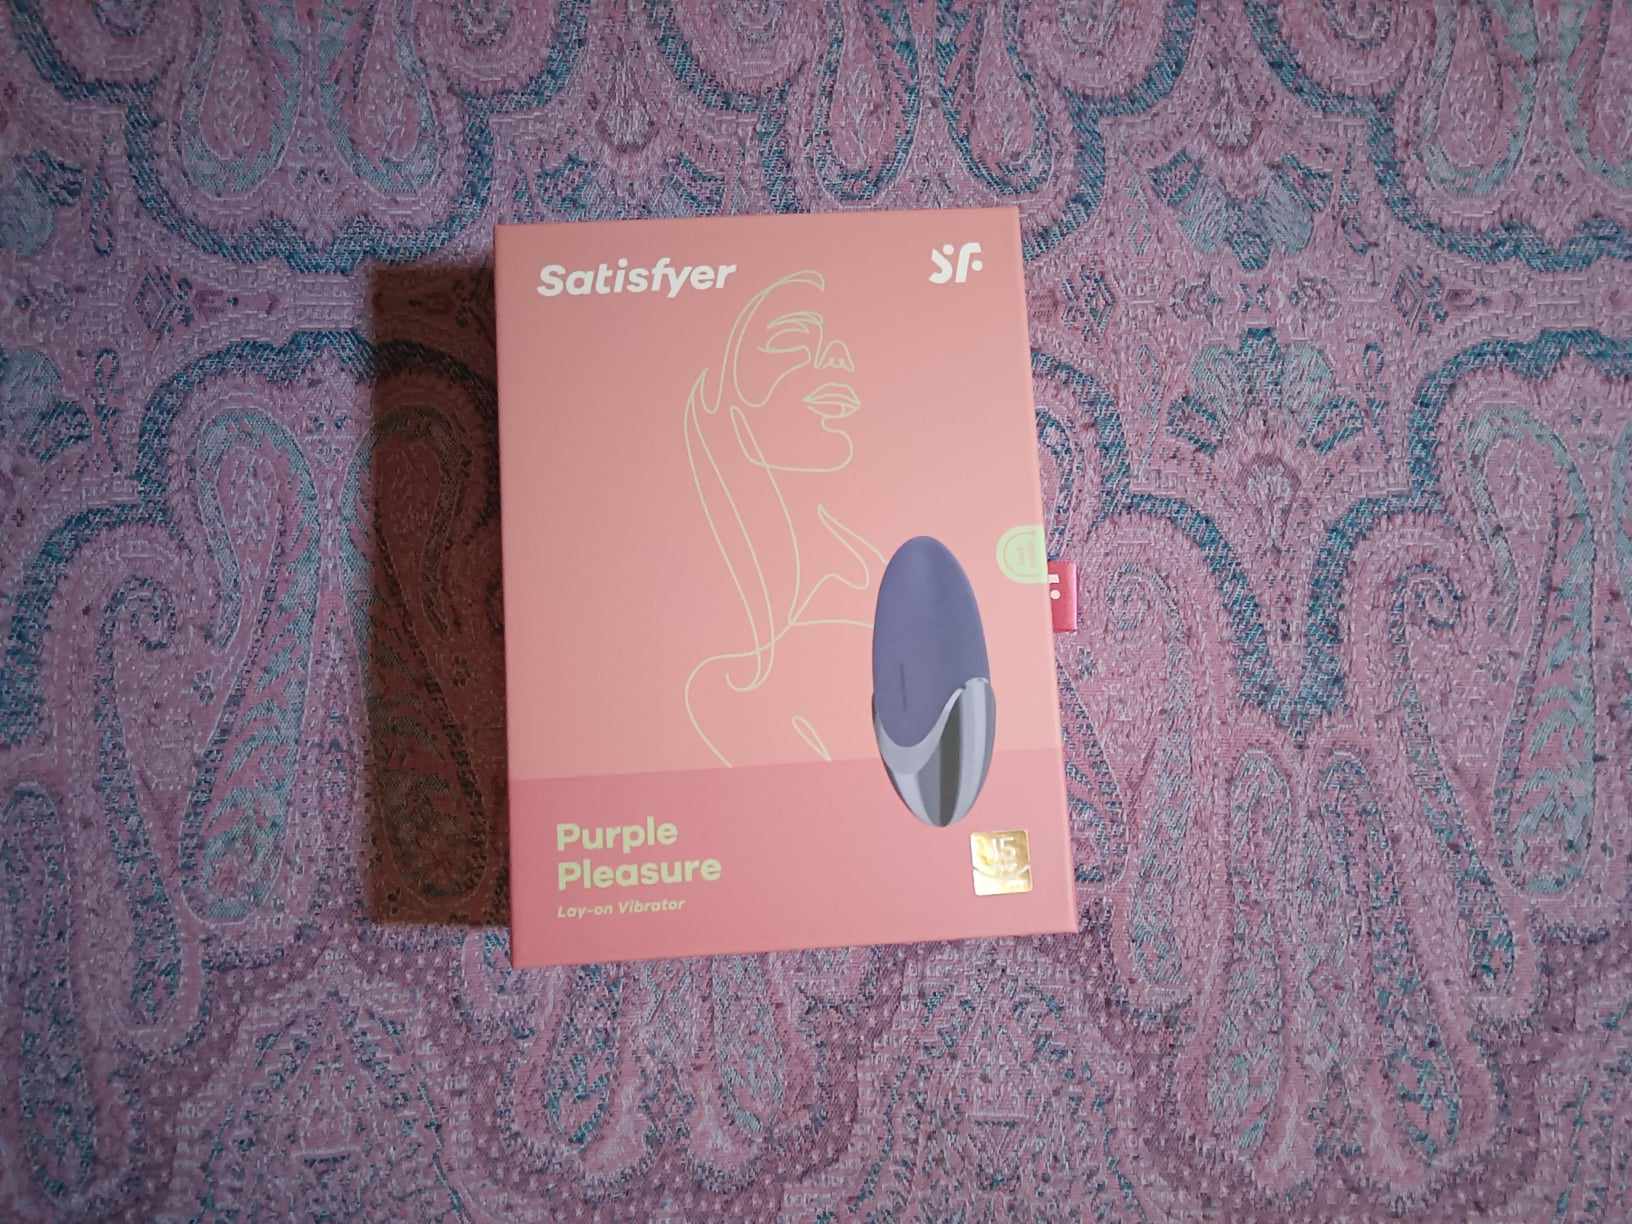 Satisfyer Purple Pleasure Packaging